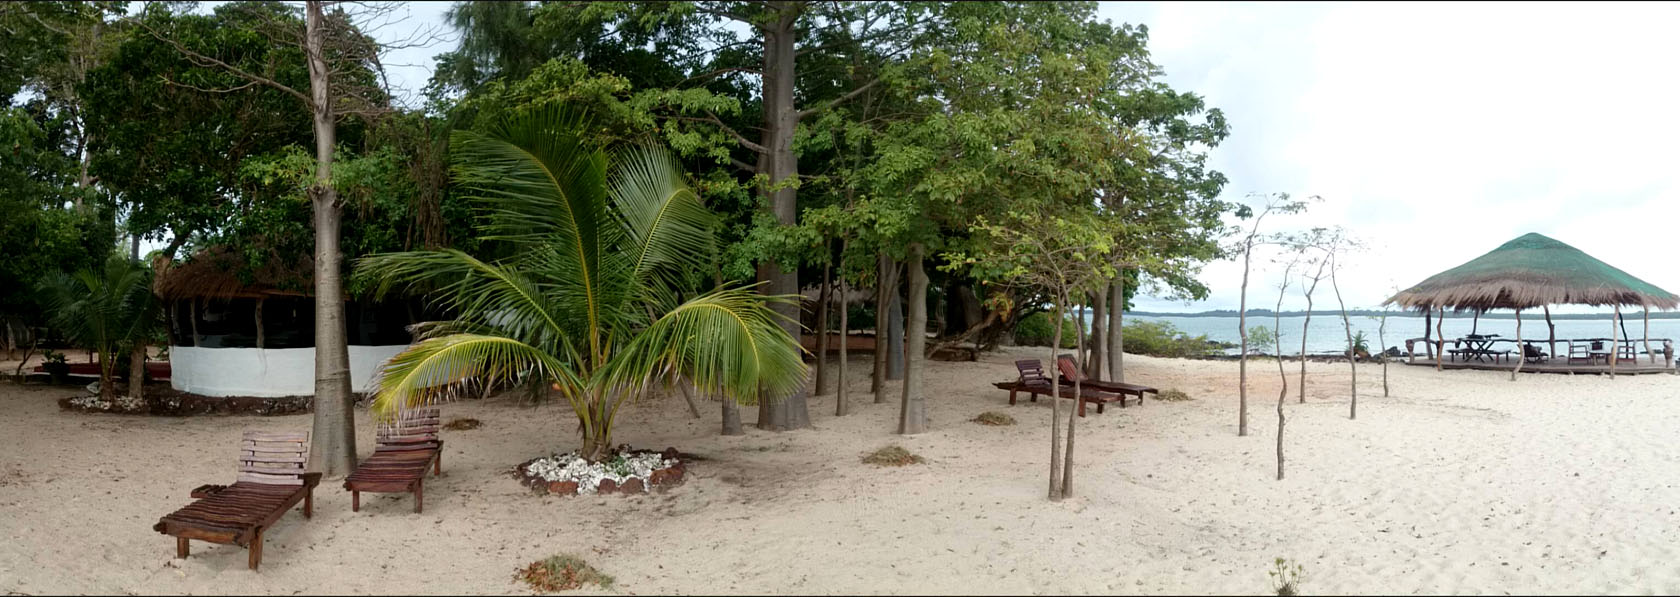 la plus belle plage de sable blanc avec cocotier de l archipel des bijagos